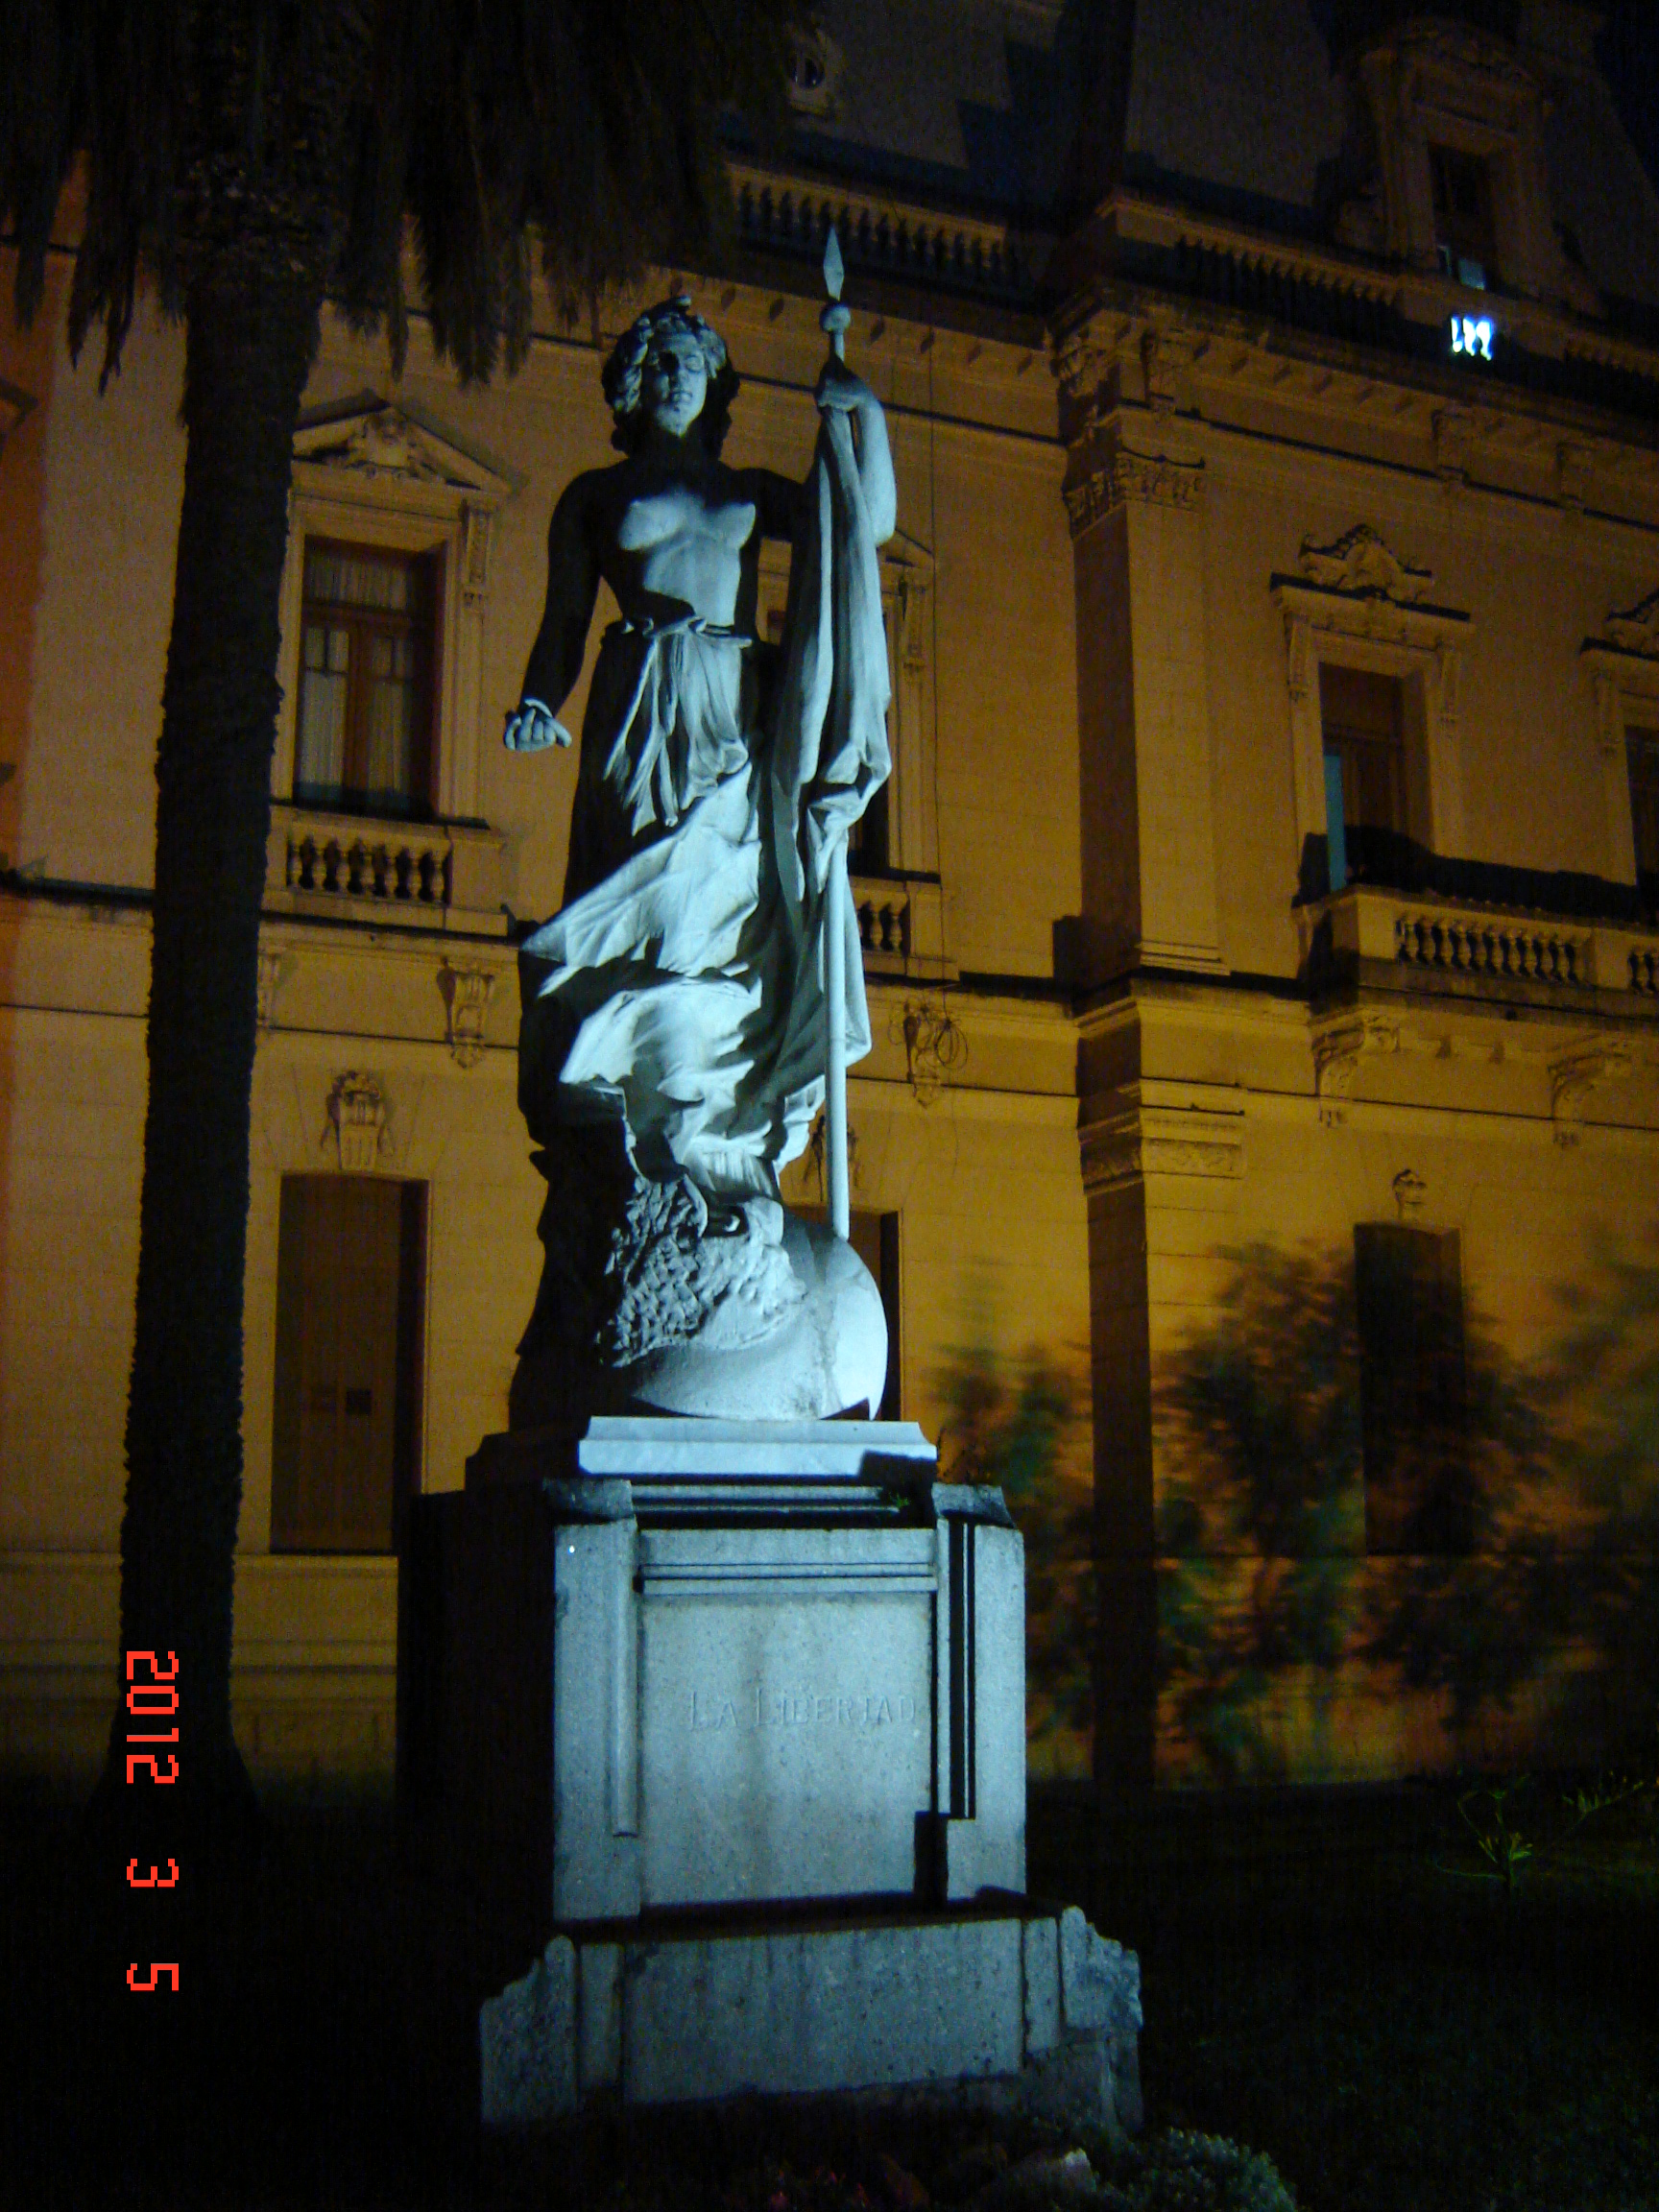 Foto: Casa de gobierno de S. S. de Jujuy. - San Salvador de Jujuy (Jujuy), Argentina